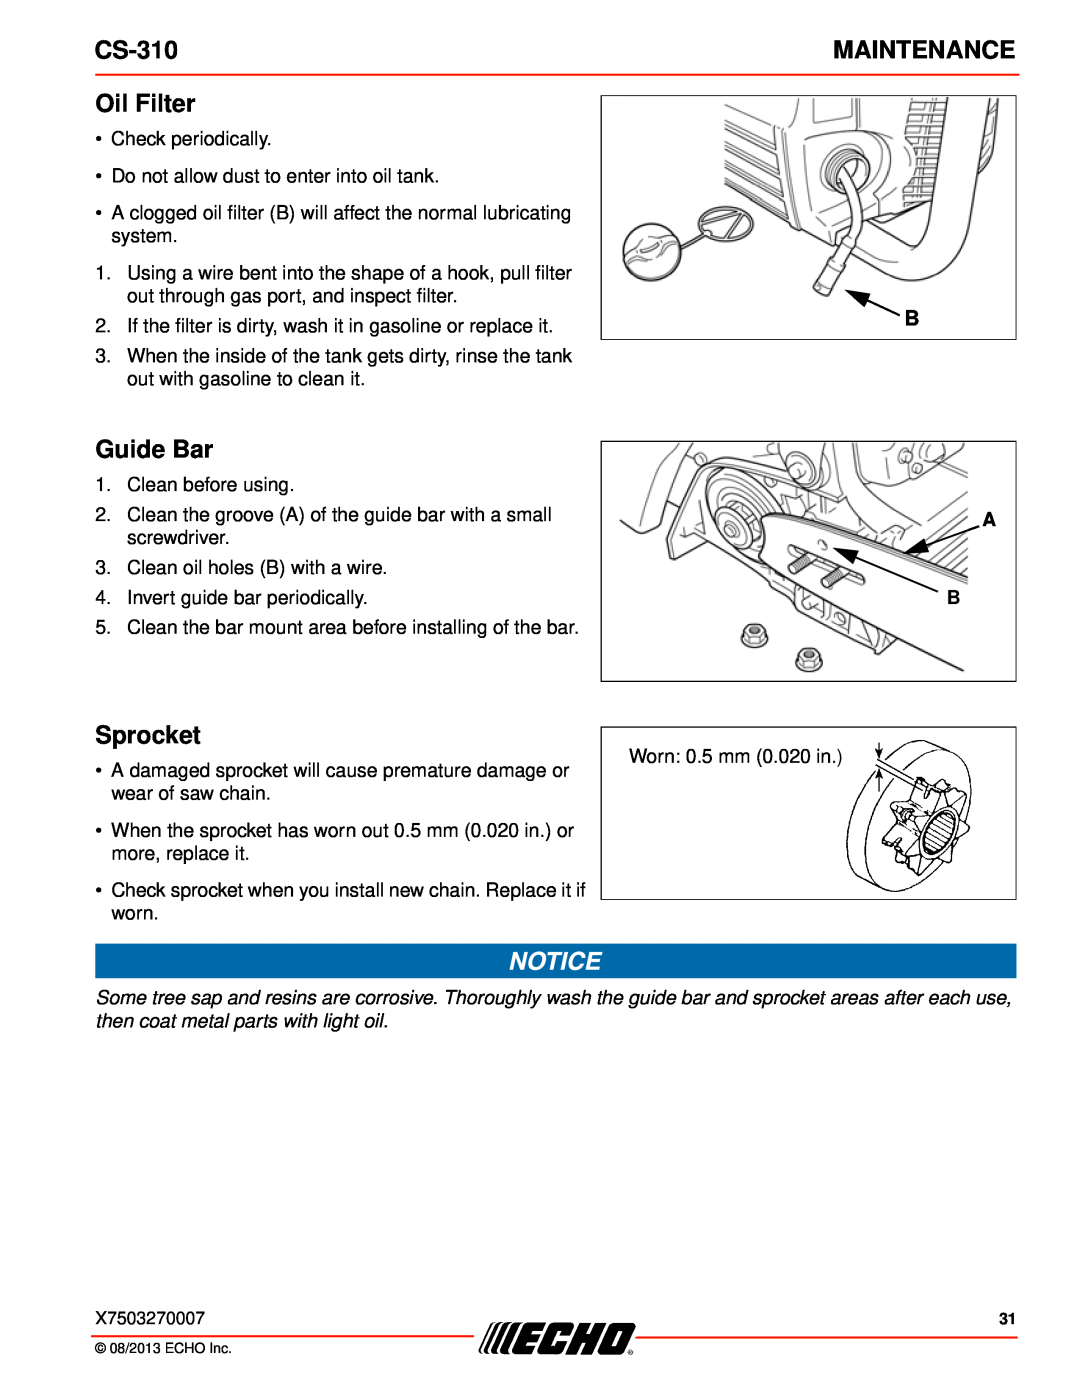 Echo CS-310 instruction manual Oil Filter, Sprocket, Maintenance, Guide Bar 